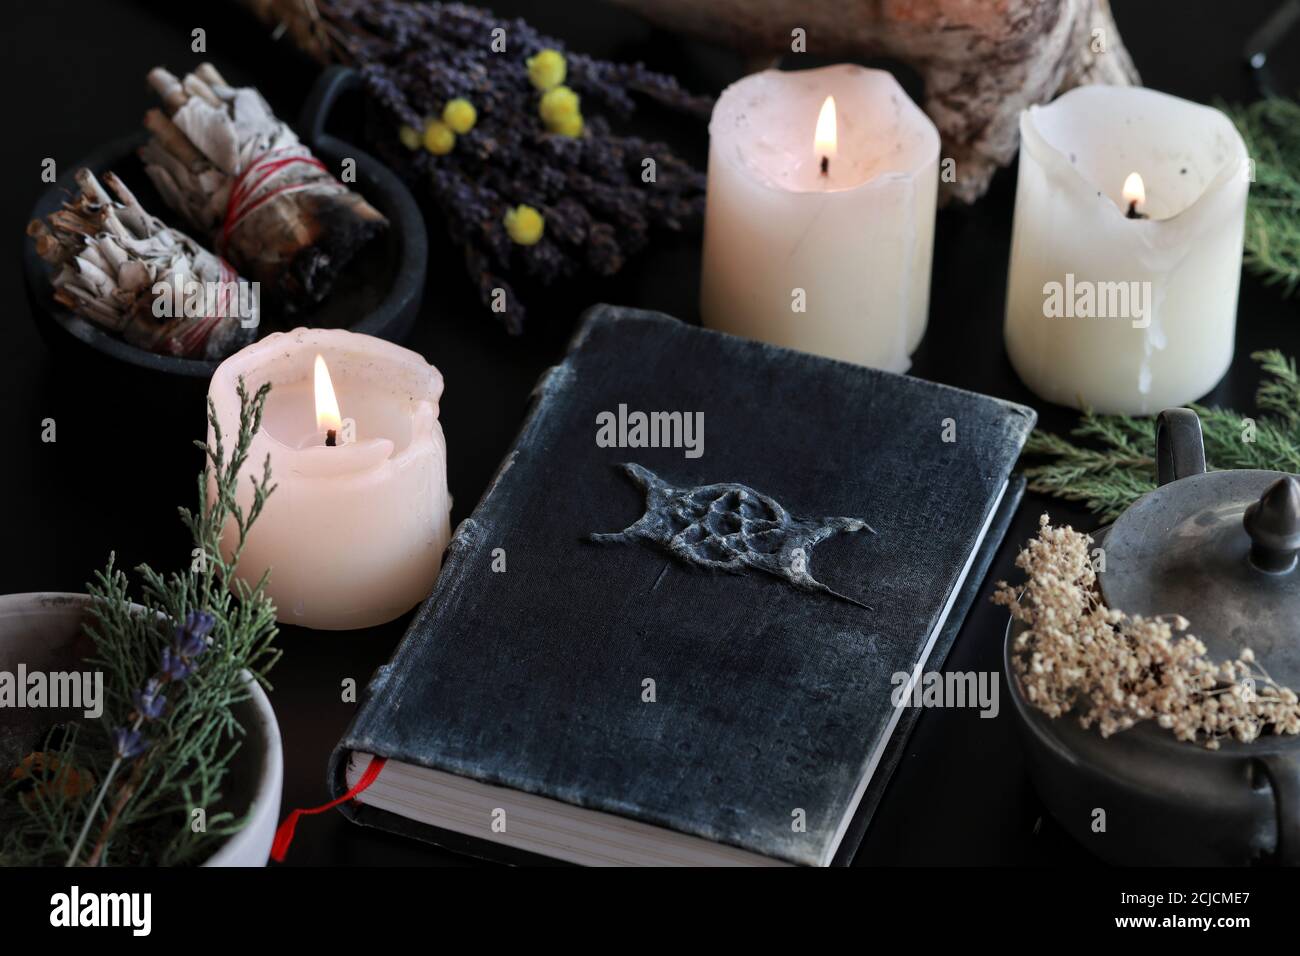 Wiccan Hexenaltar mit einem Hand gemacht alt aussehende Buch Grimoire mit dreifachen Mond Symbol, und andere verschiedene Gegenstände - getrocknete Blumen, Naturelemente Stockfoto